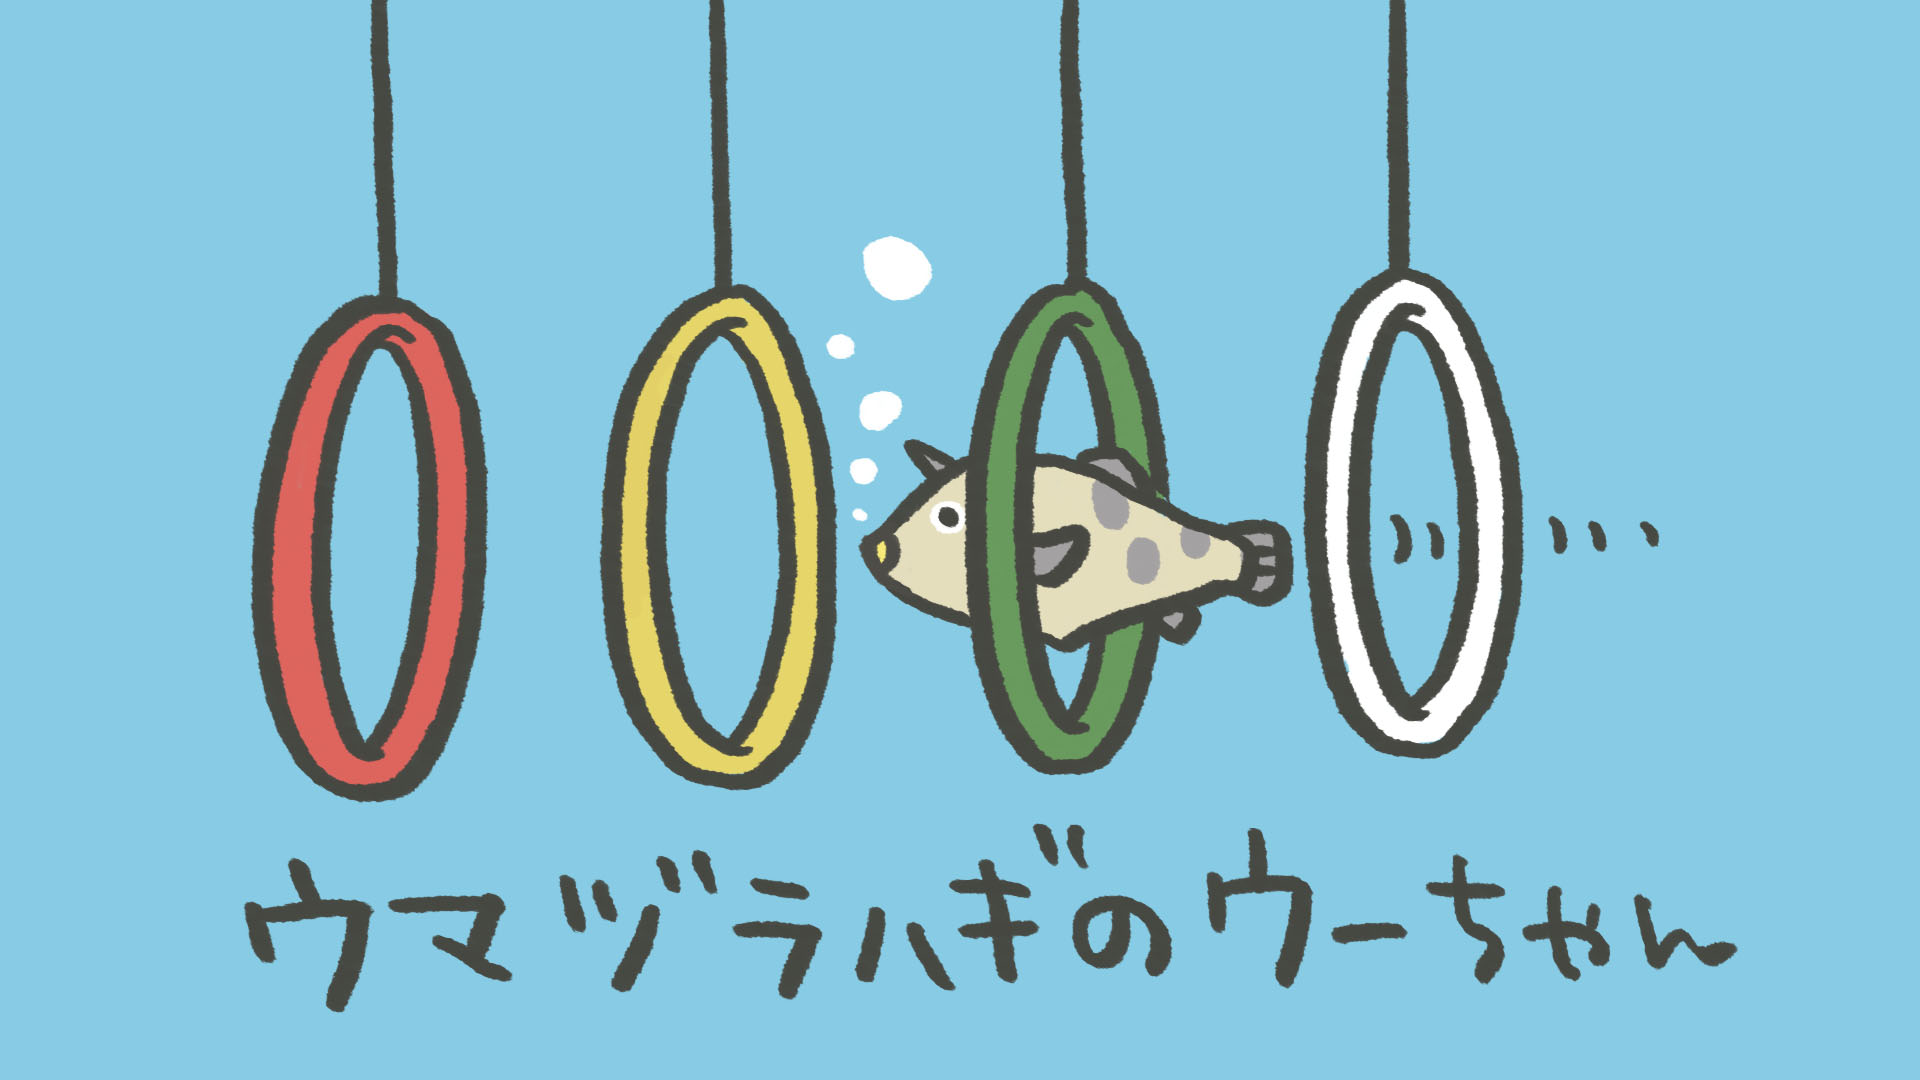 池田八惠子 on X:  輪くぐりの芸ができるウマヅラハギのウーちゃんをテレビで見てかわいくてしょうがない。魚津水族館のおさかなショーに出演（？）しているらしい。見に行きたい…！ウーち